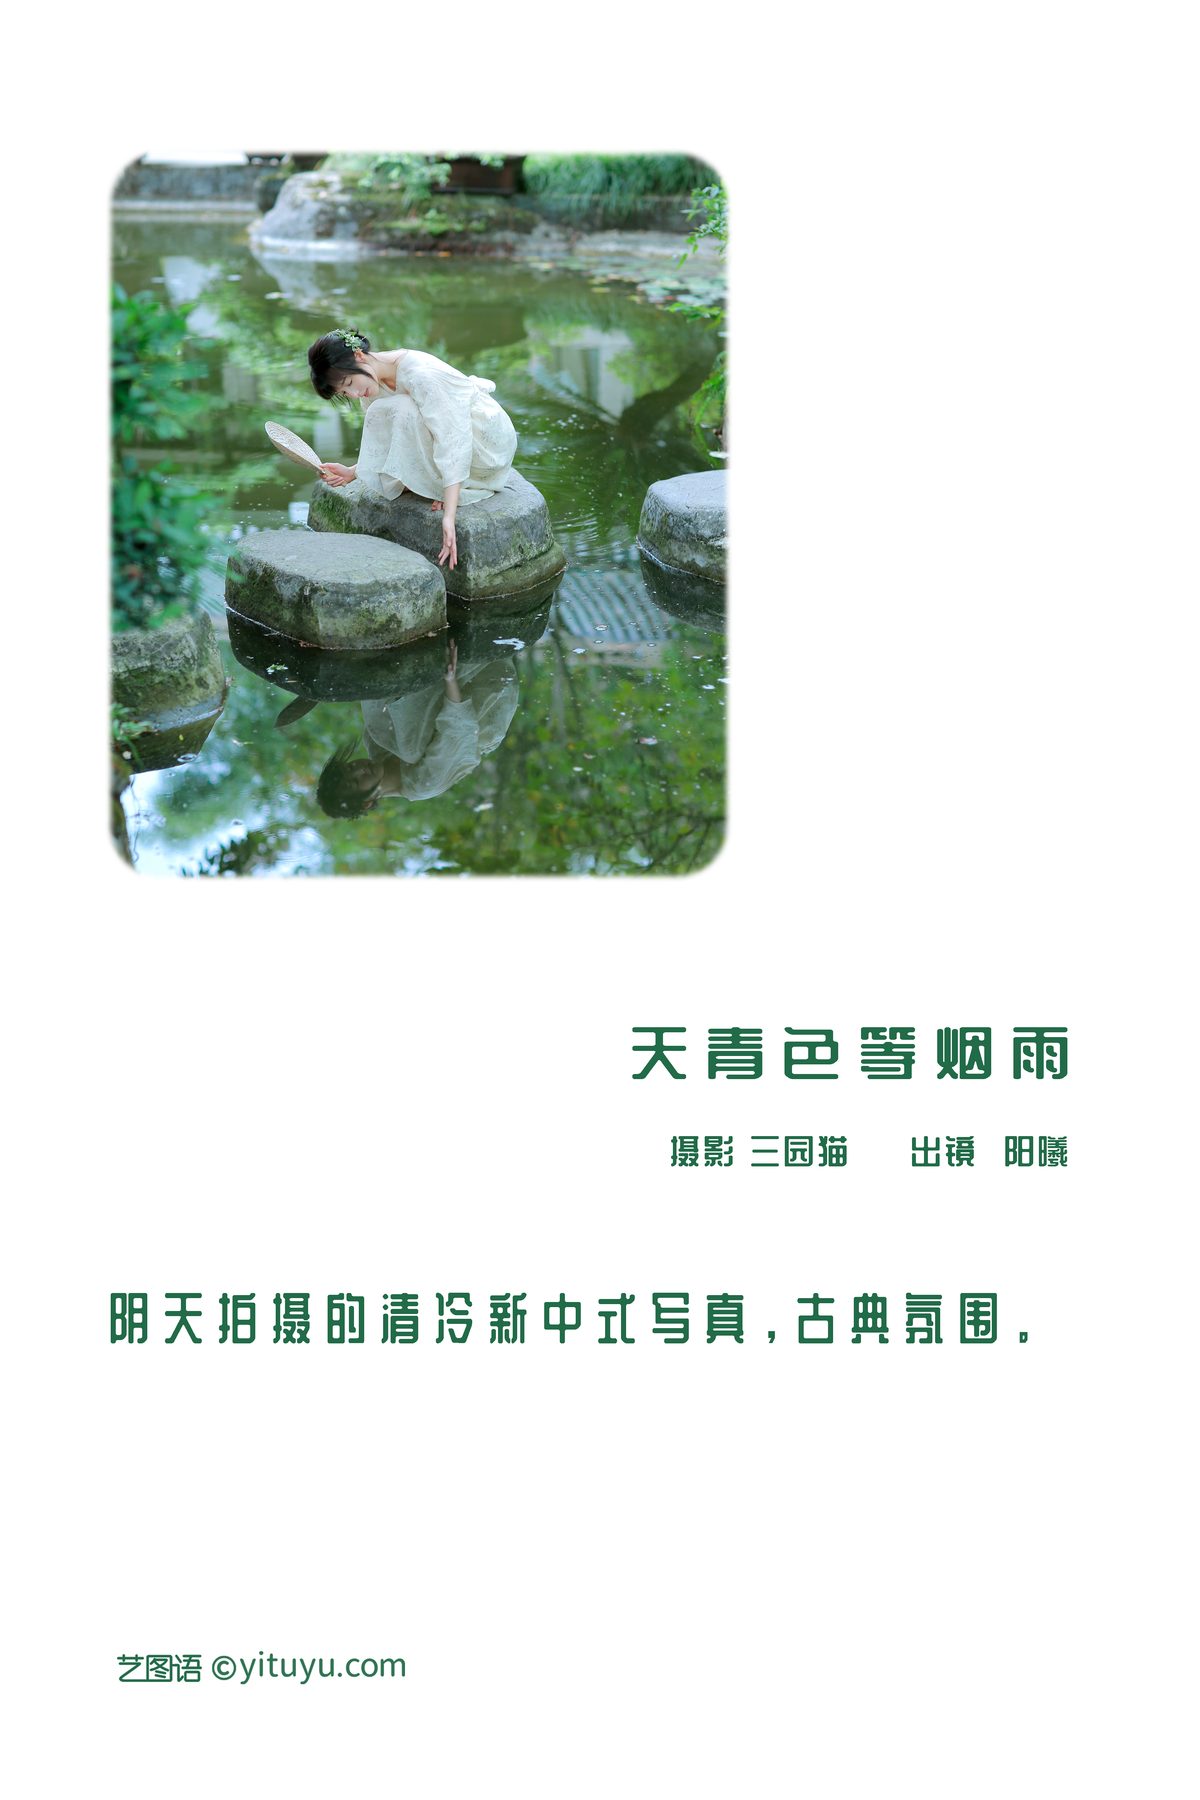 YiTuYu艺图语 Vol 3146 Yang Xi 0002 8722160860.jpg